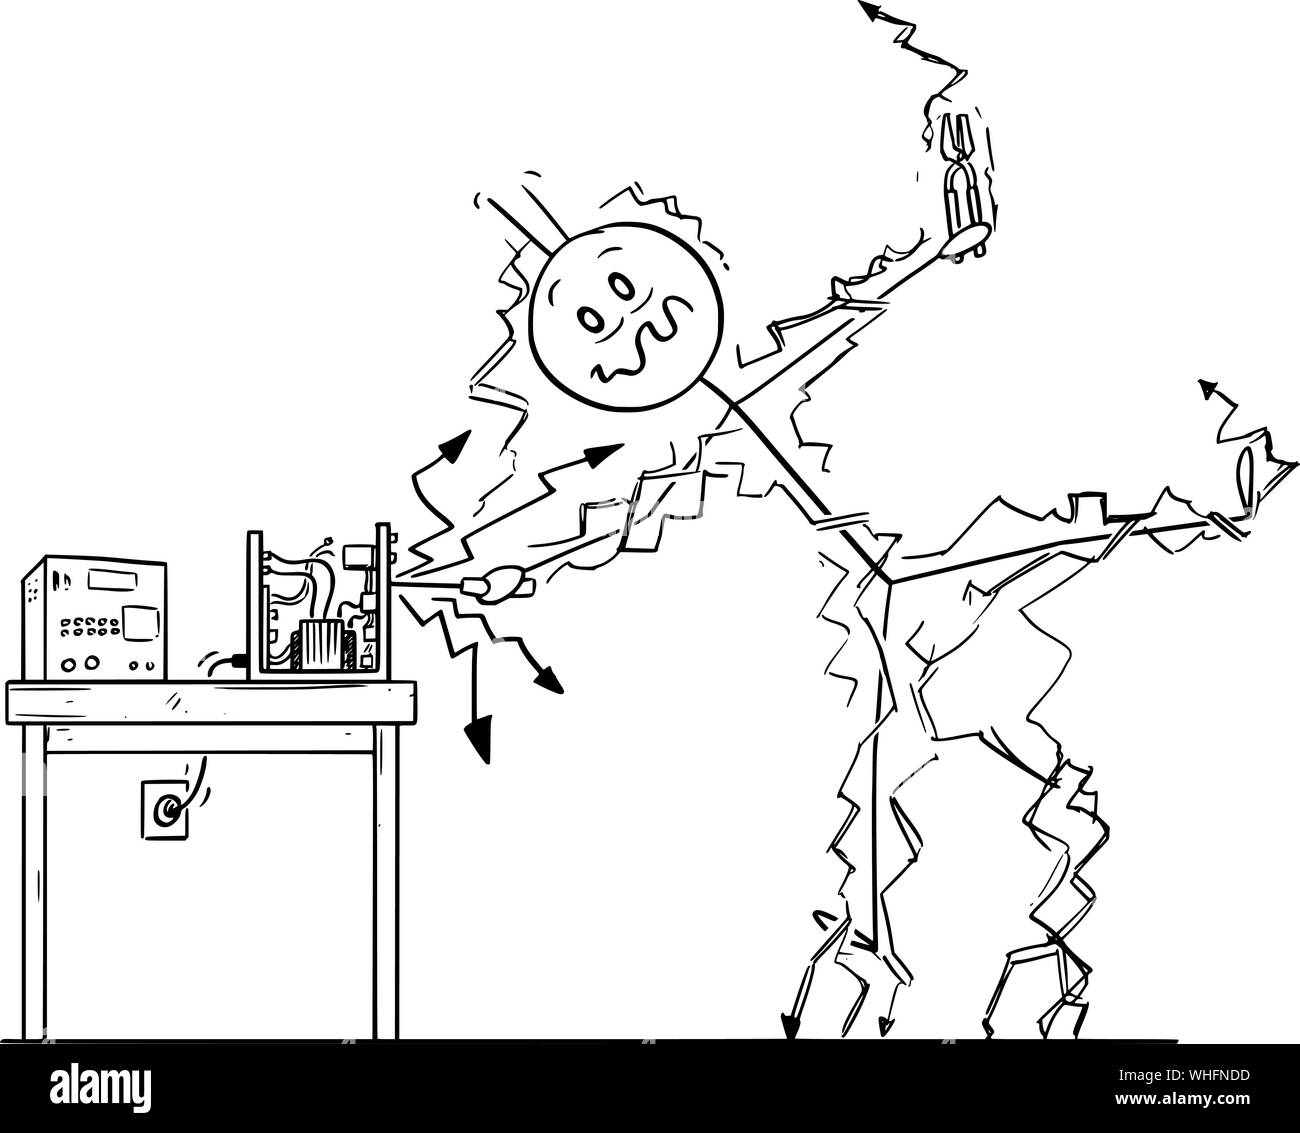 Vector cartoon stick figure dessin illustration conceptuelle de l'homme ou réparateur réparer certains appareils électroniques et d'obtenir un choc électrique. Concept de sécurité au travail. Illustration de Vecteur